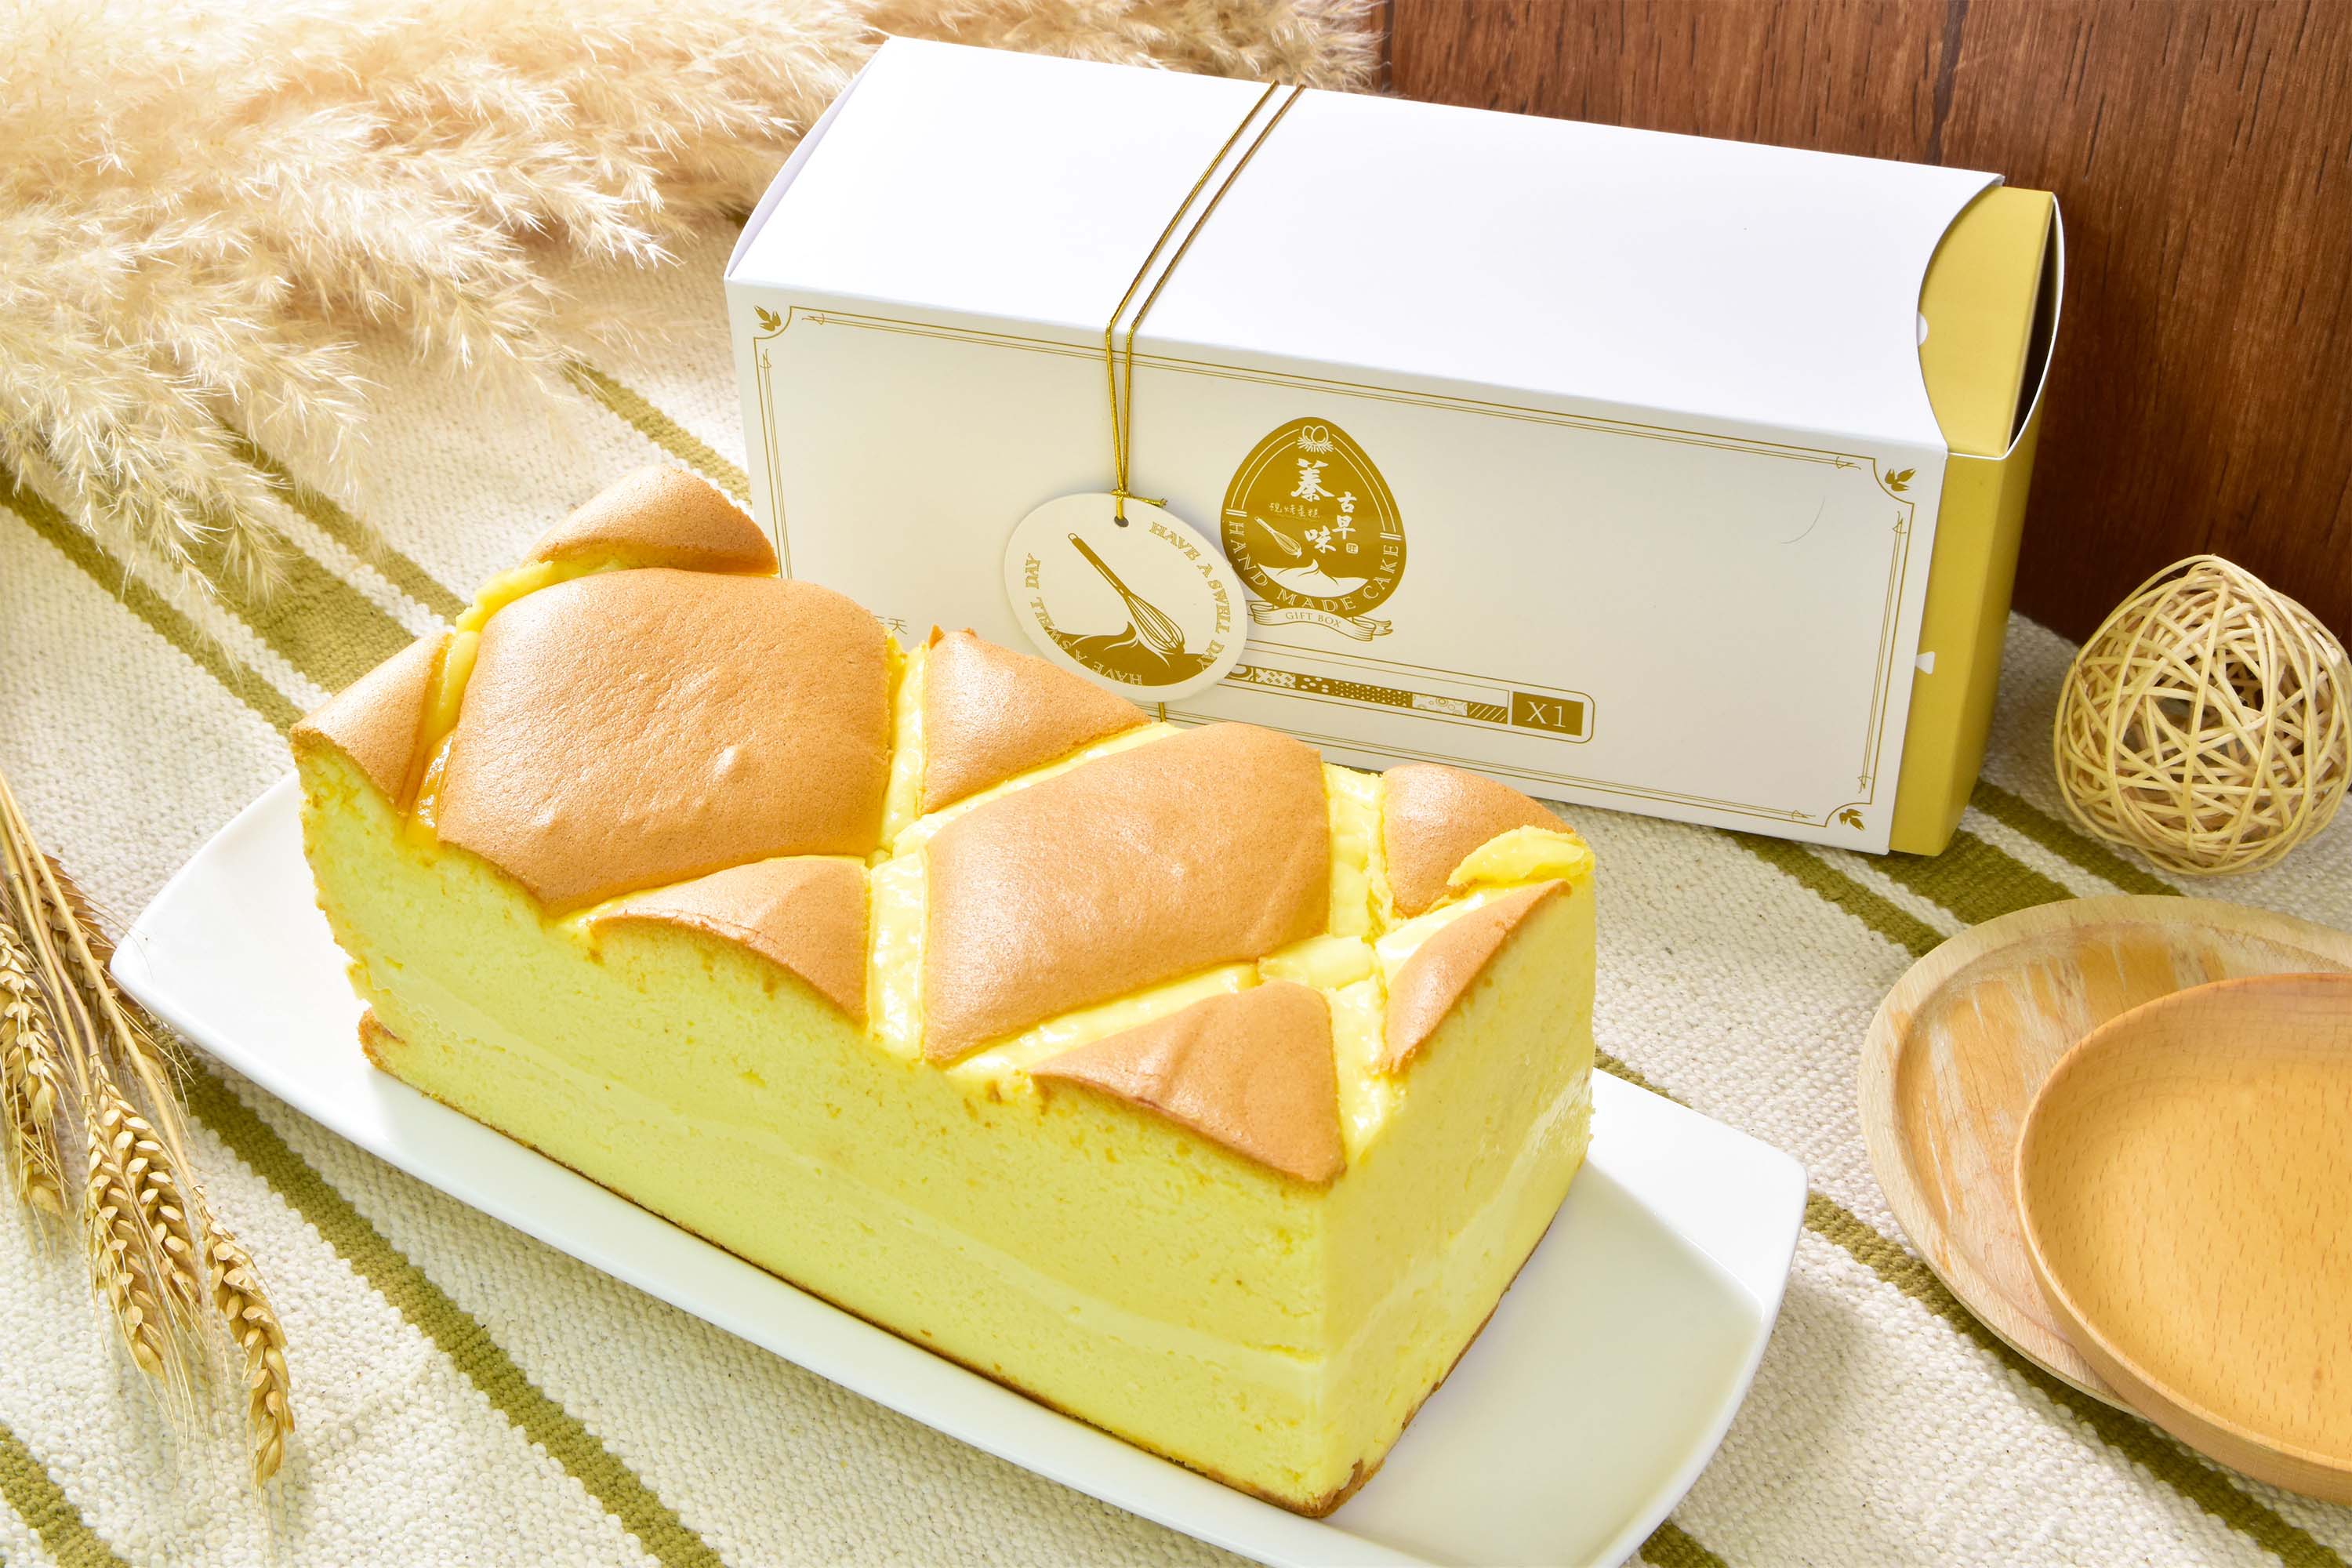 一款简单朴素的经典玉枕古早味蛋糕 吃起来满满的蛋奶香味__万家热线-安徽门户网站